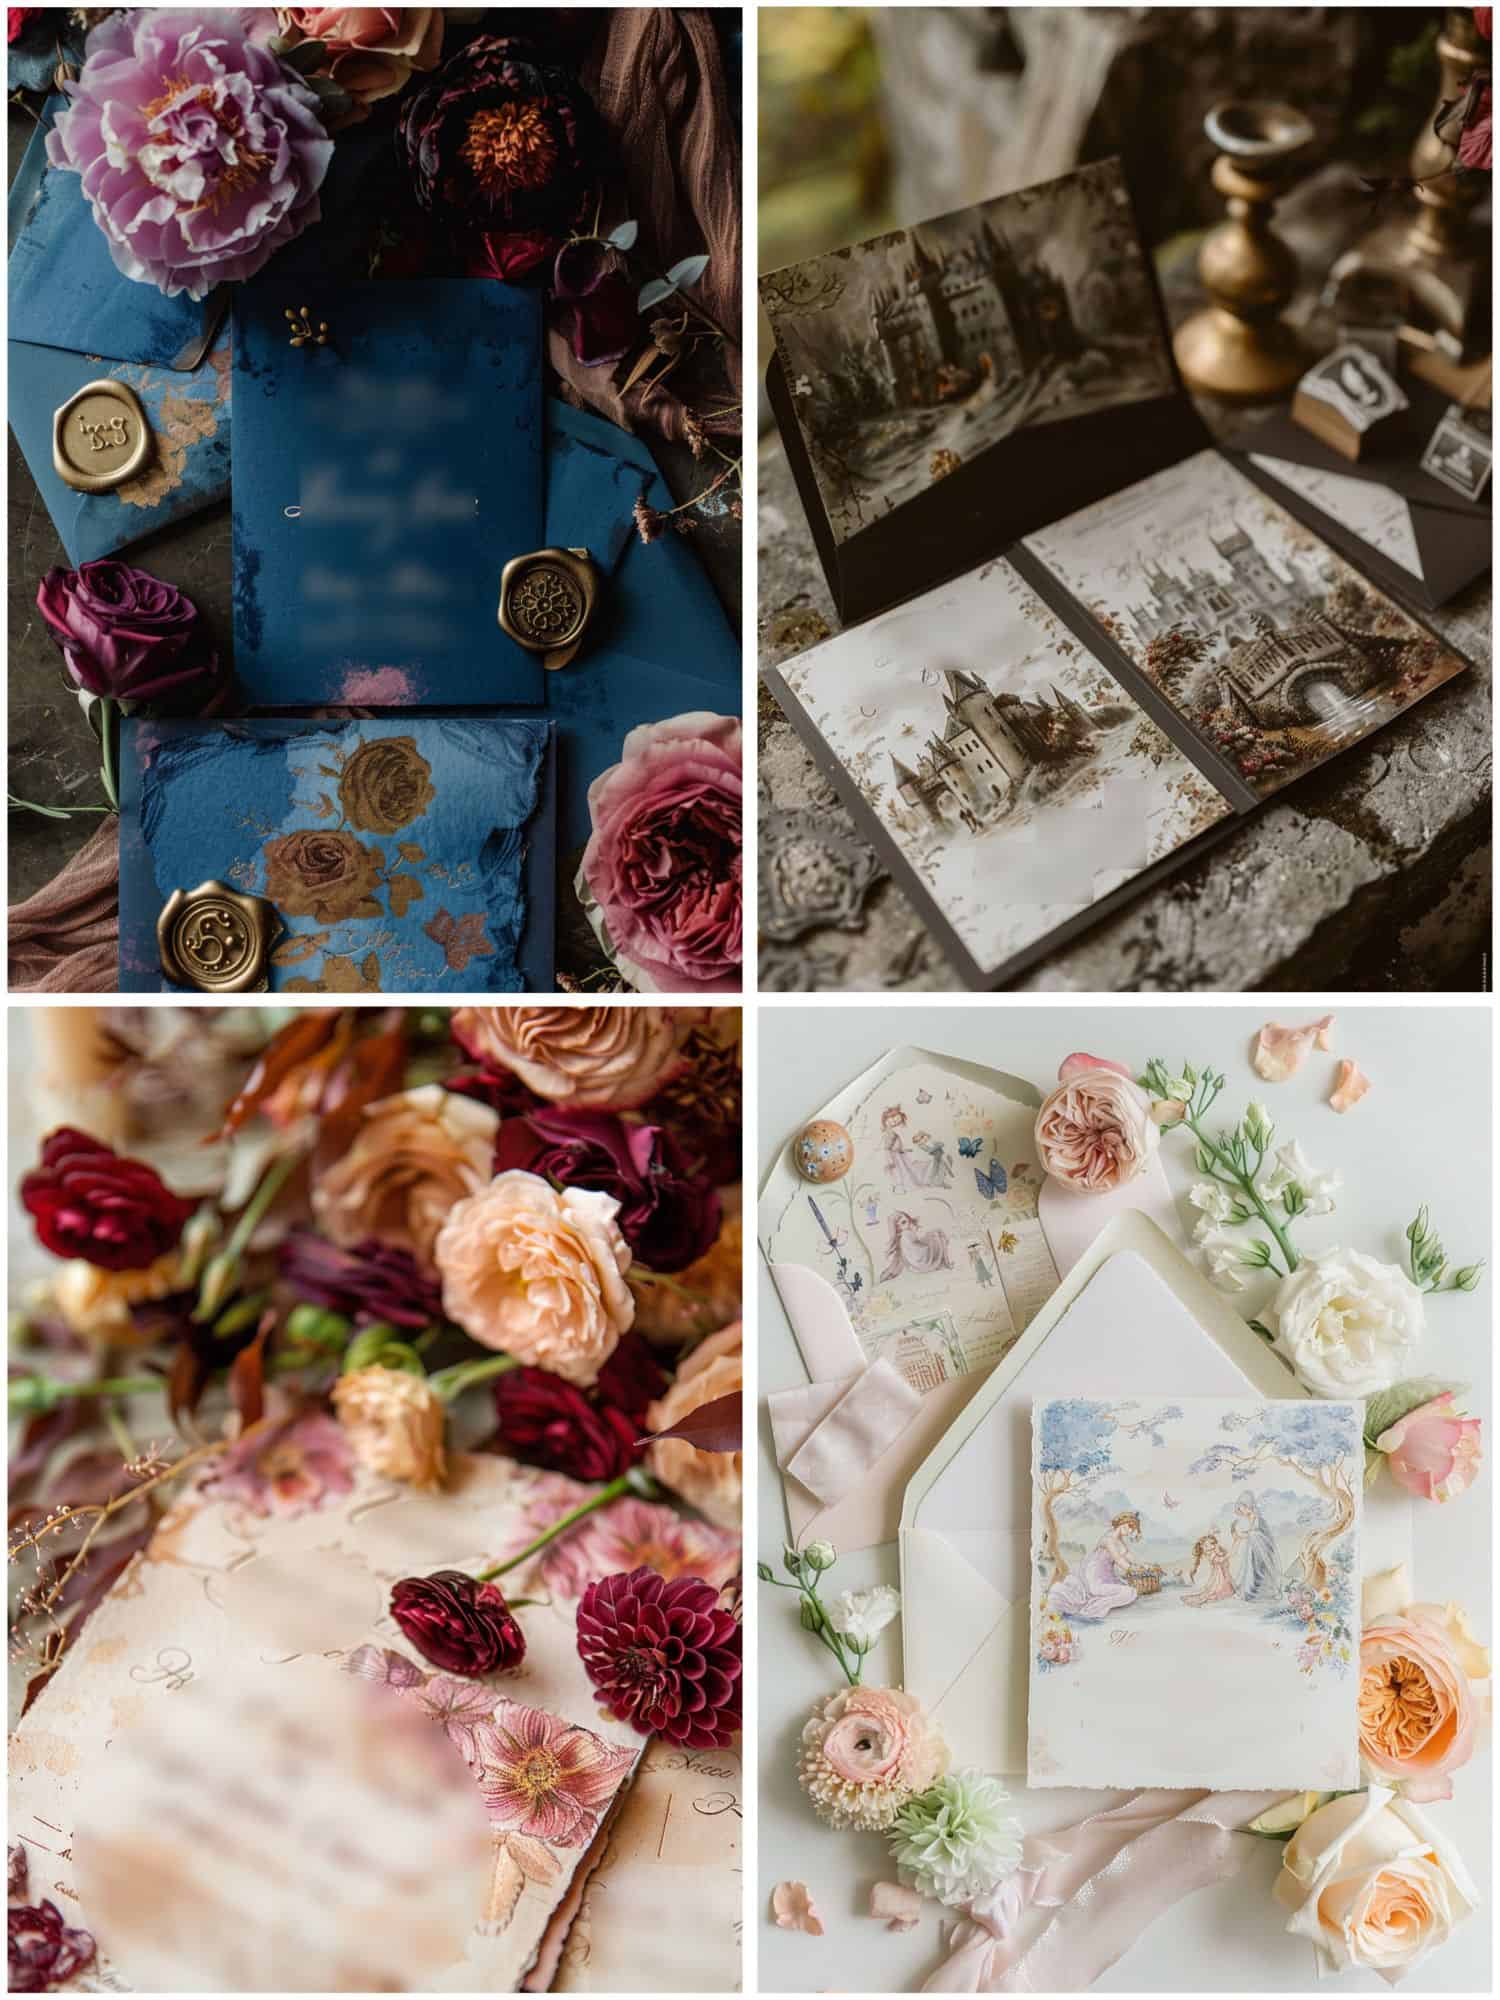 fairytale wedding theme ideas for invitations